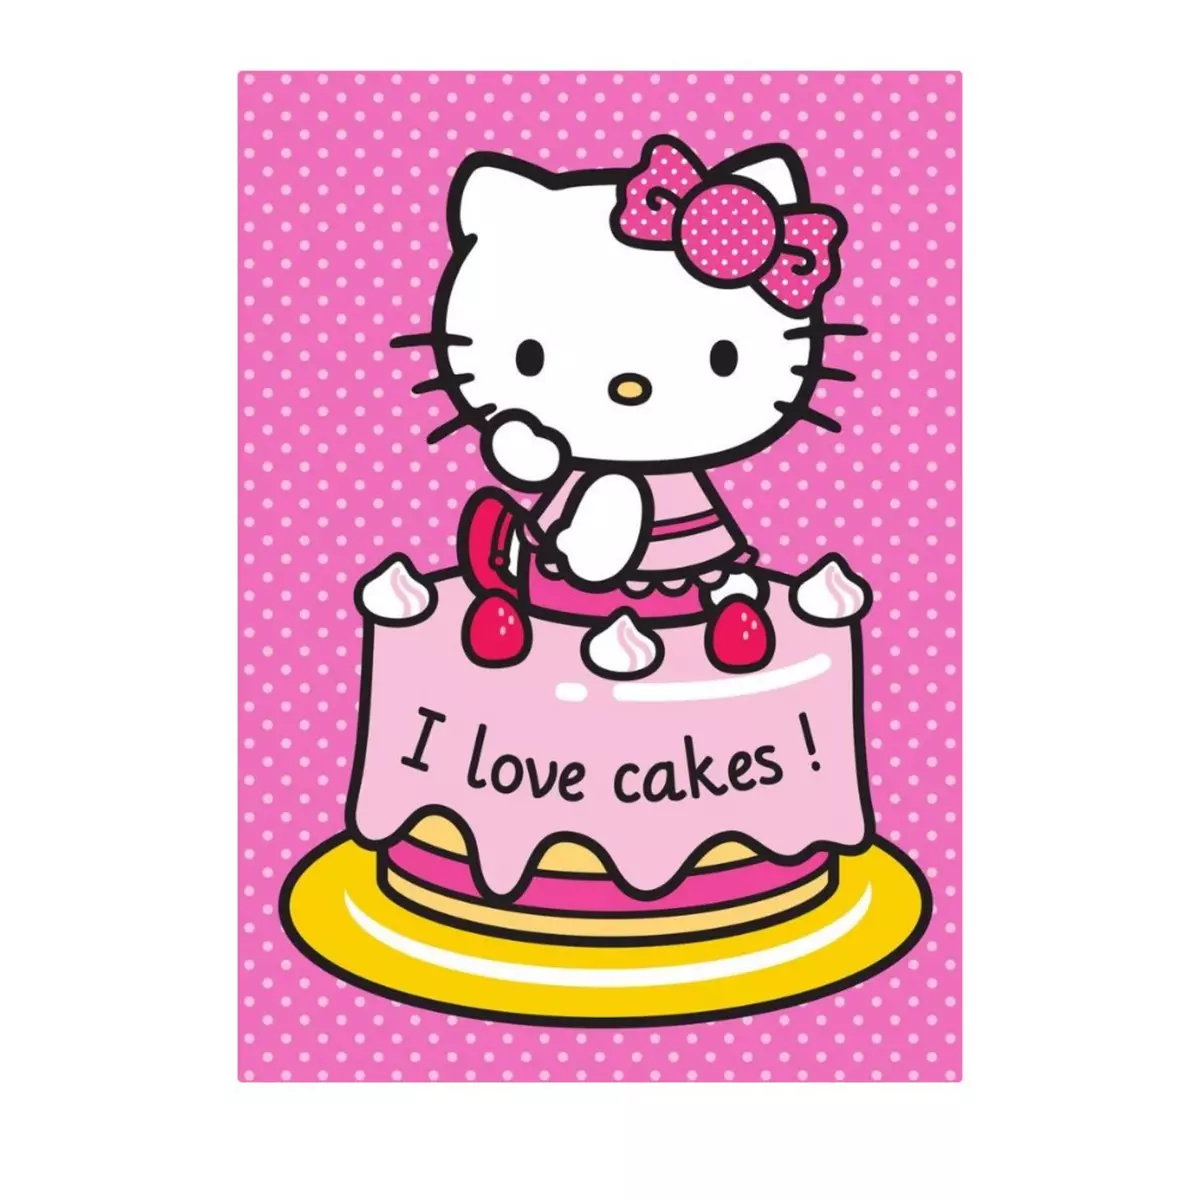  Tapis enfant Hello Kitty 133 x 95 cm Cakes